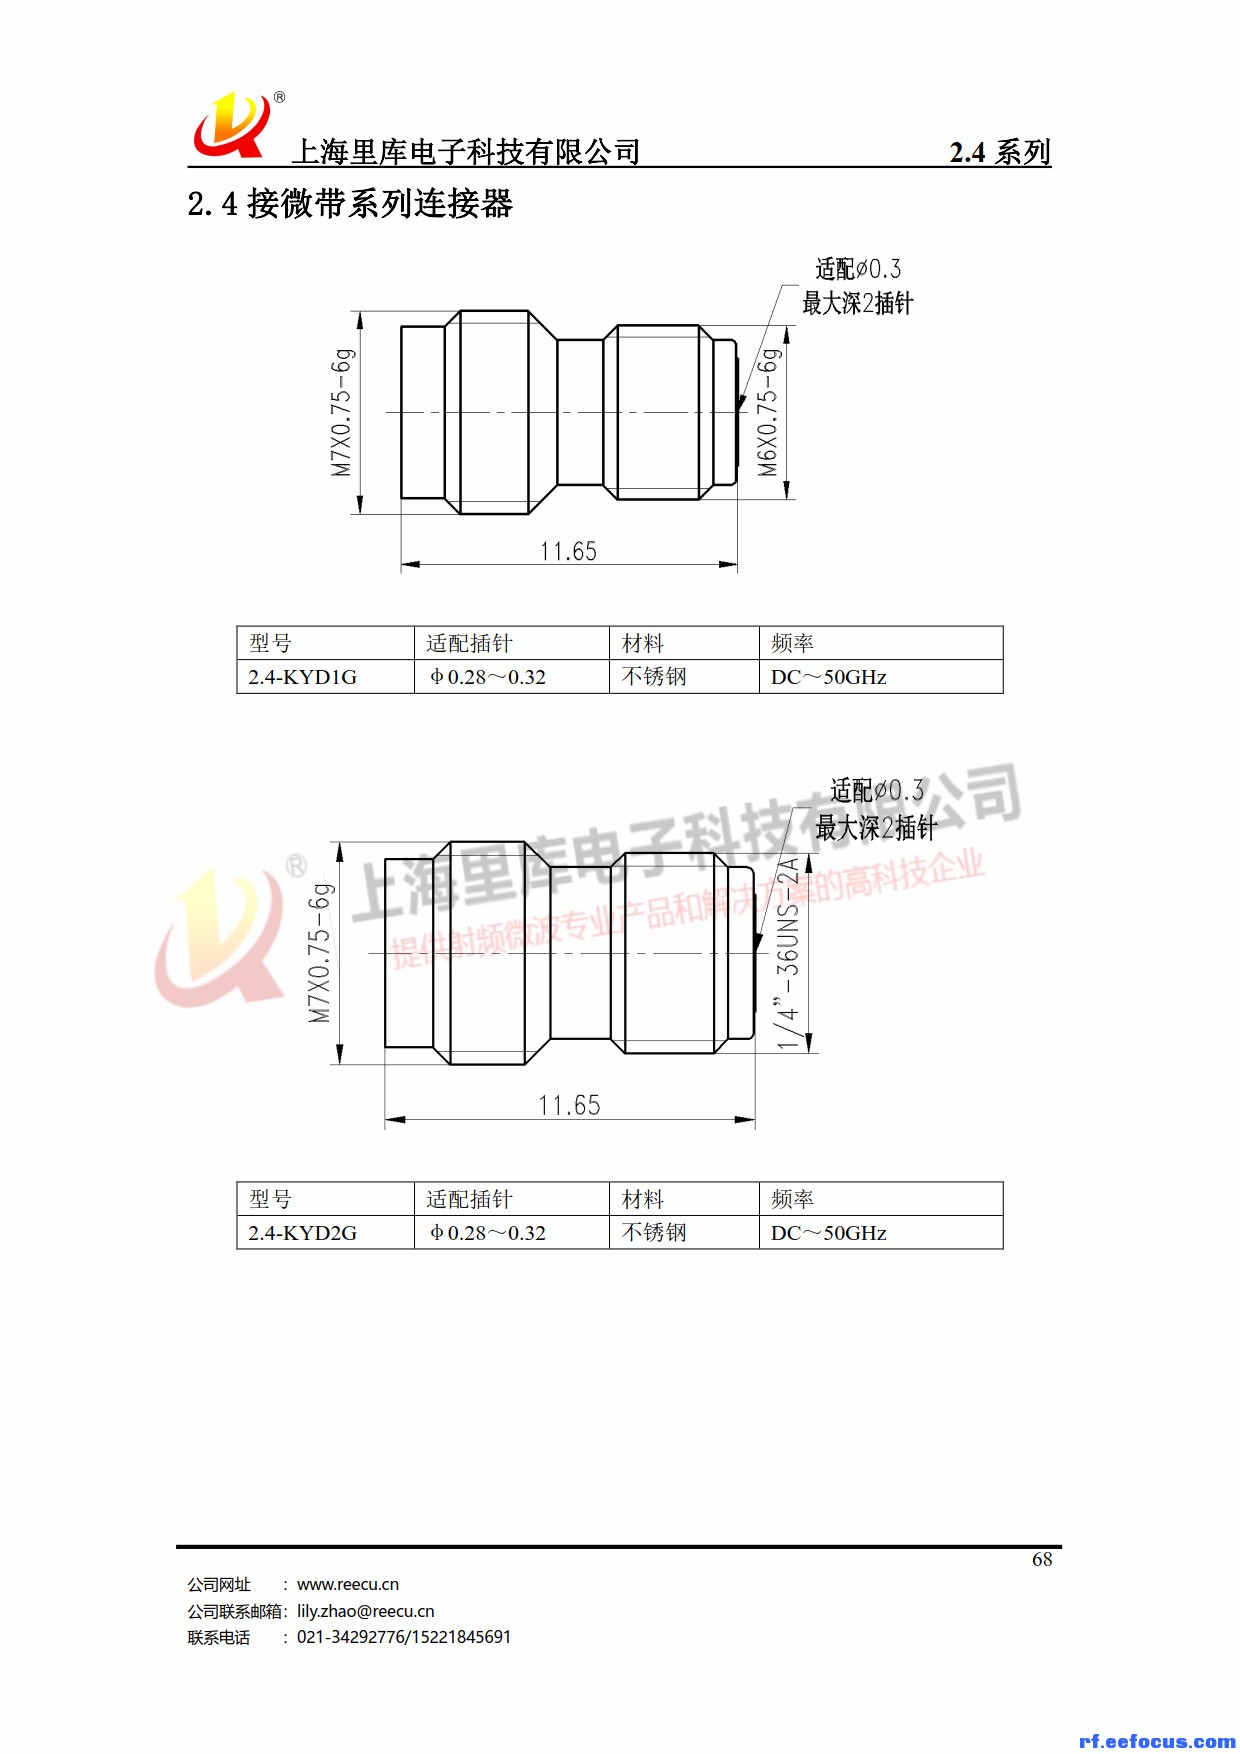 连接器产品手册-里库电子_68.jpg